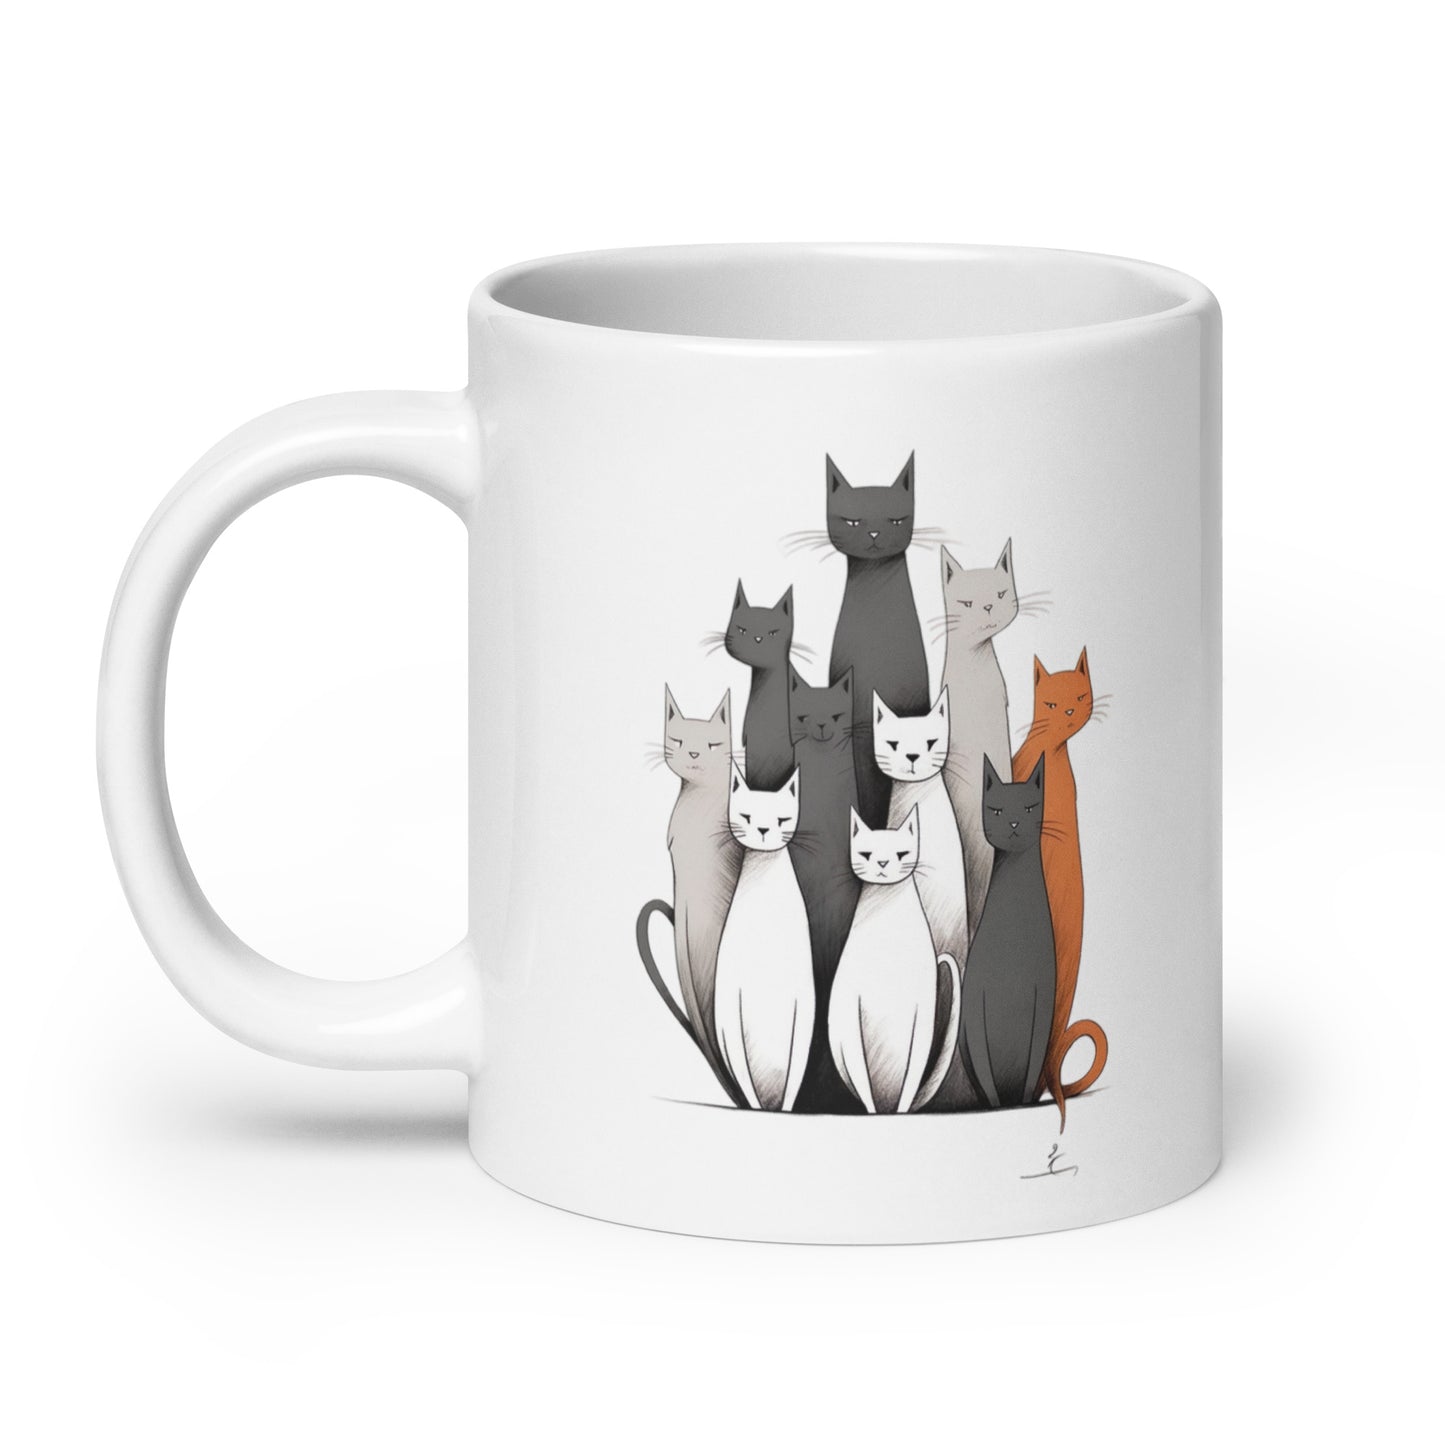 White glossy mug: Cats